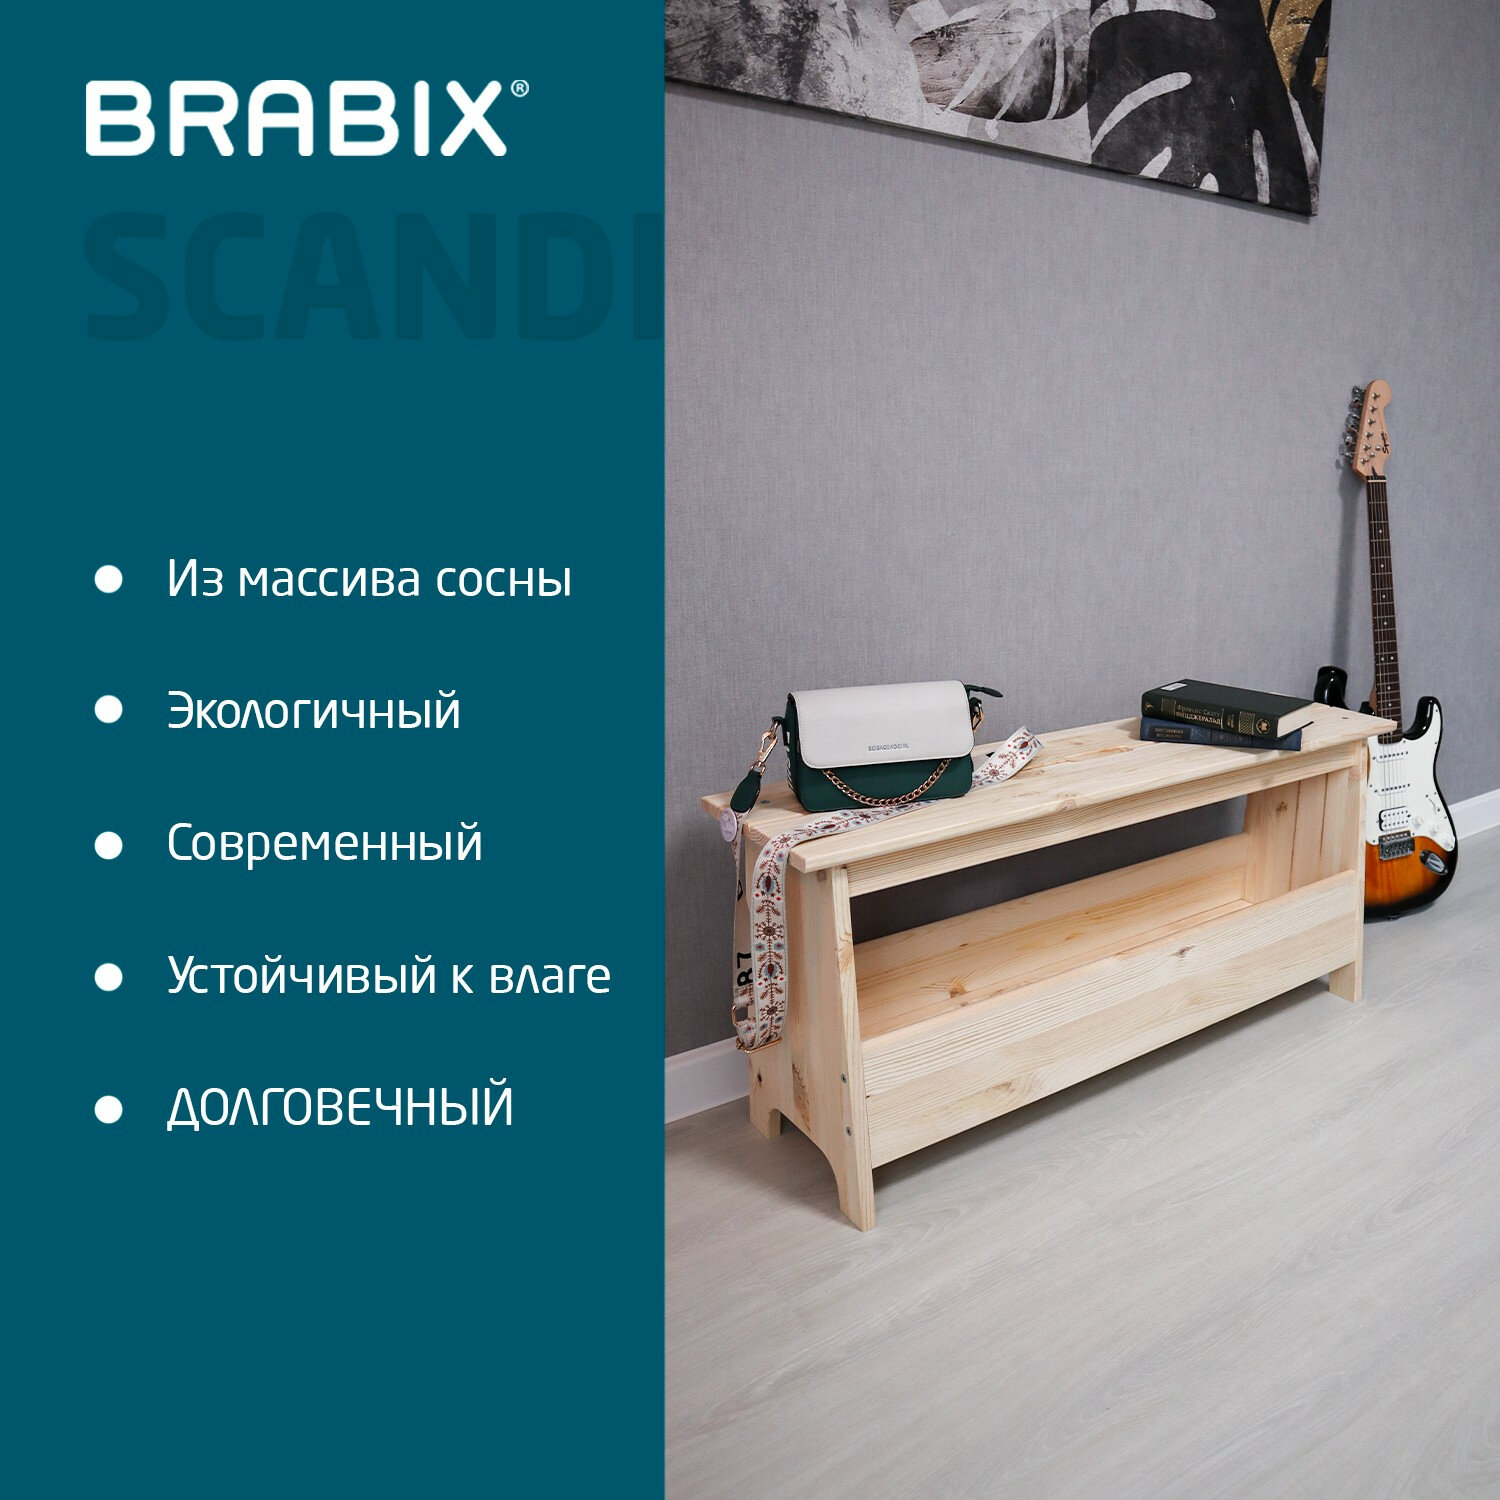 Brabix  BRABIX 641889